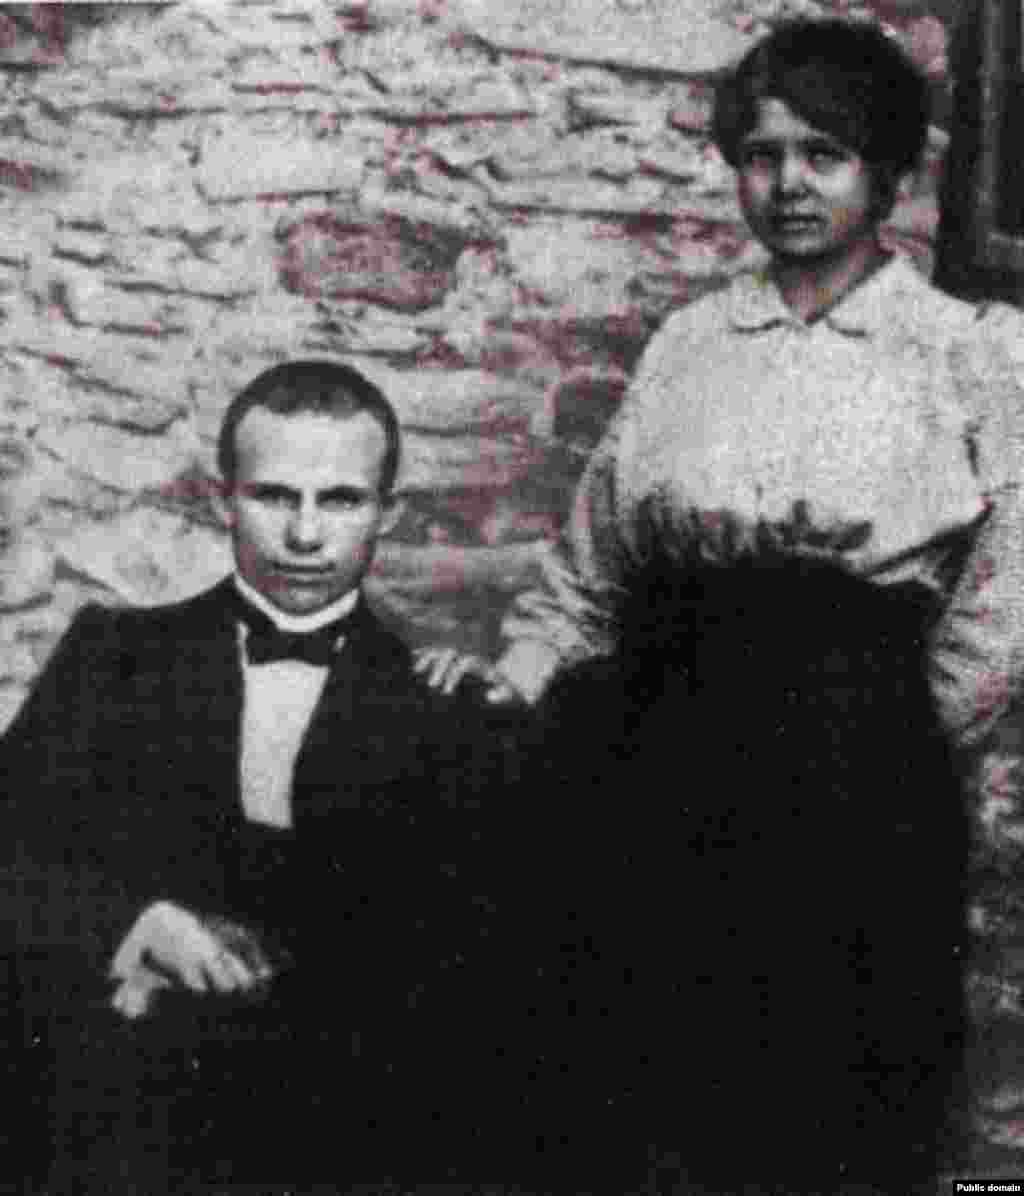 Никита Хрущев со своей первой женой Ефросиньей. 1916 год. Через несколько лет Ефросинья умерла от тифа. Карьера Хрущева пошла вверх, после смерти Сталина он возглавил Советский Союз.